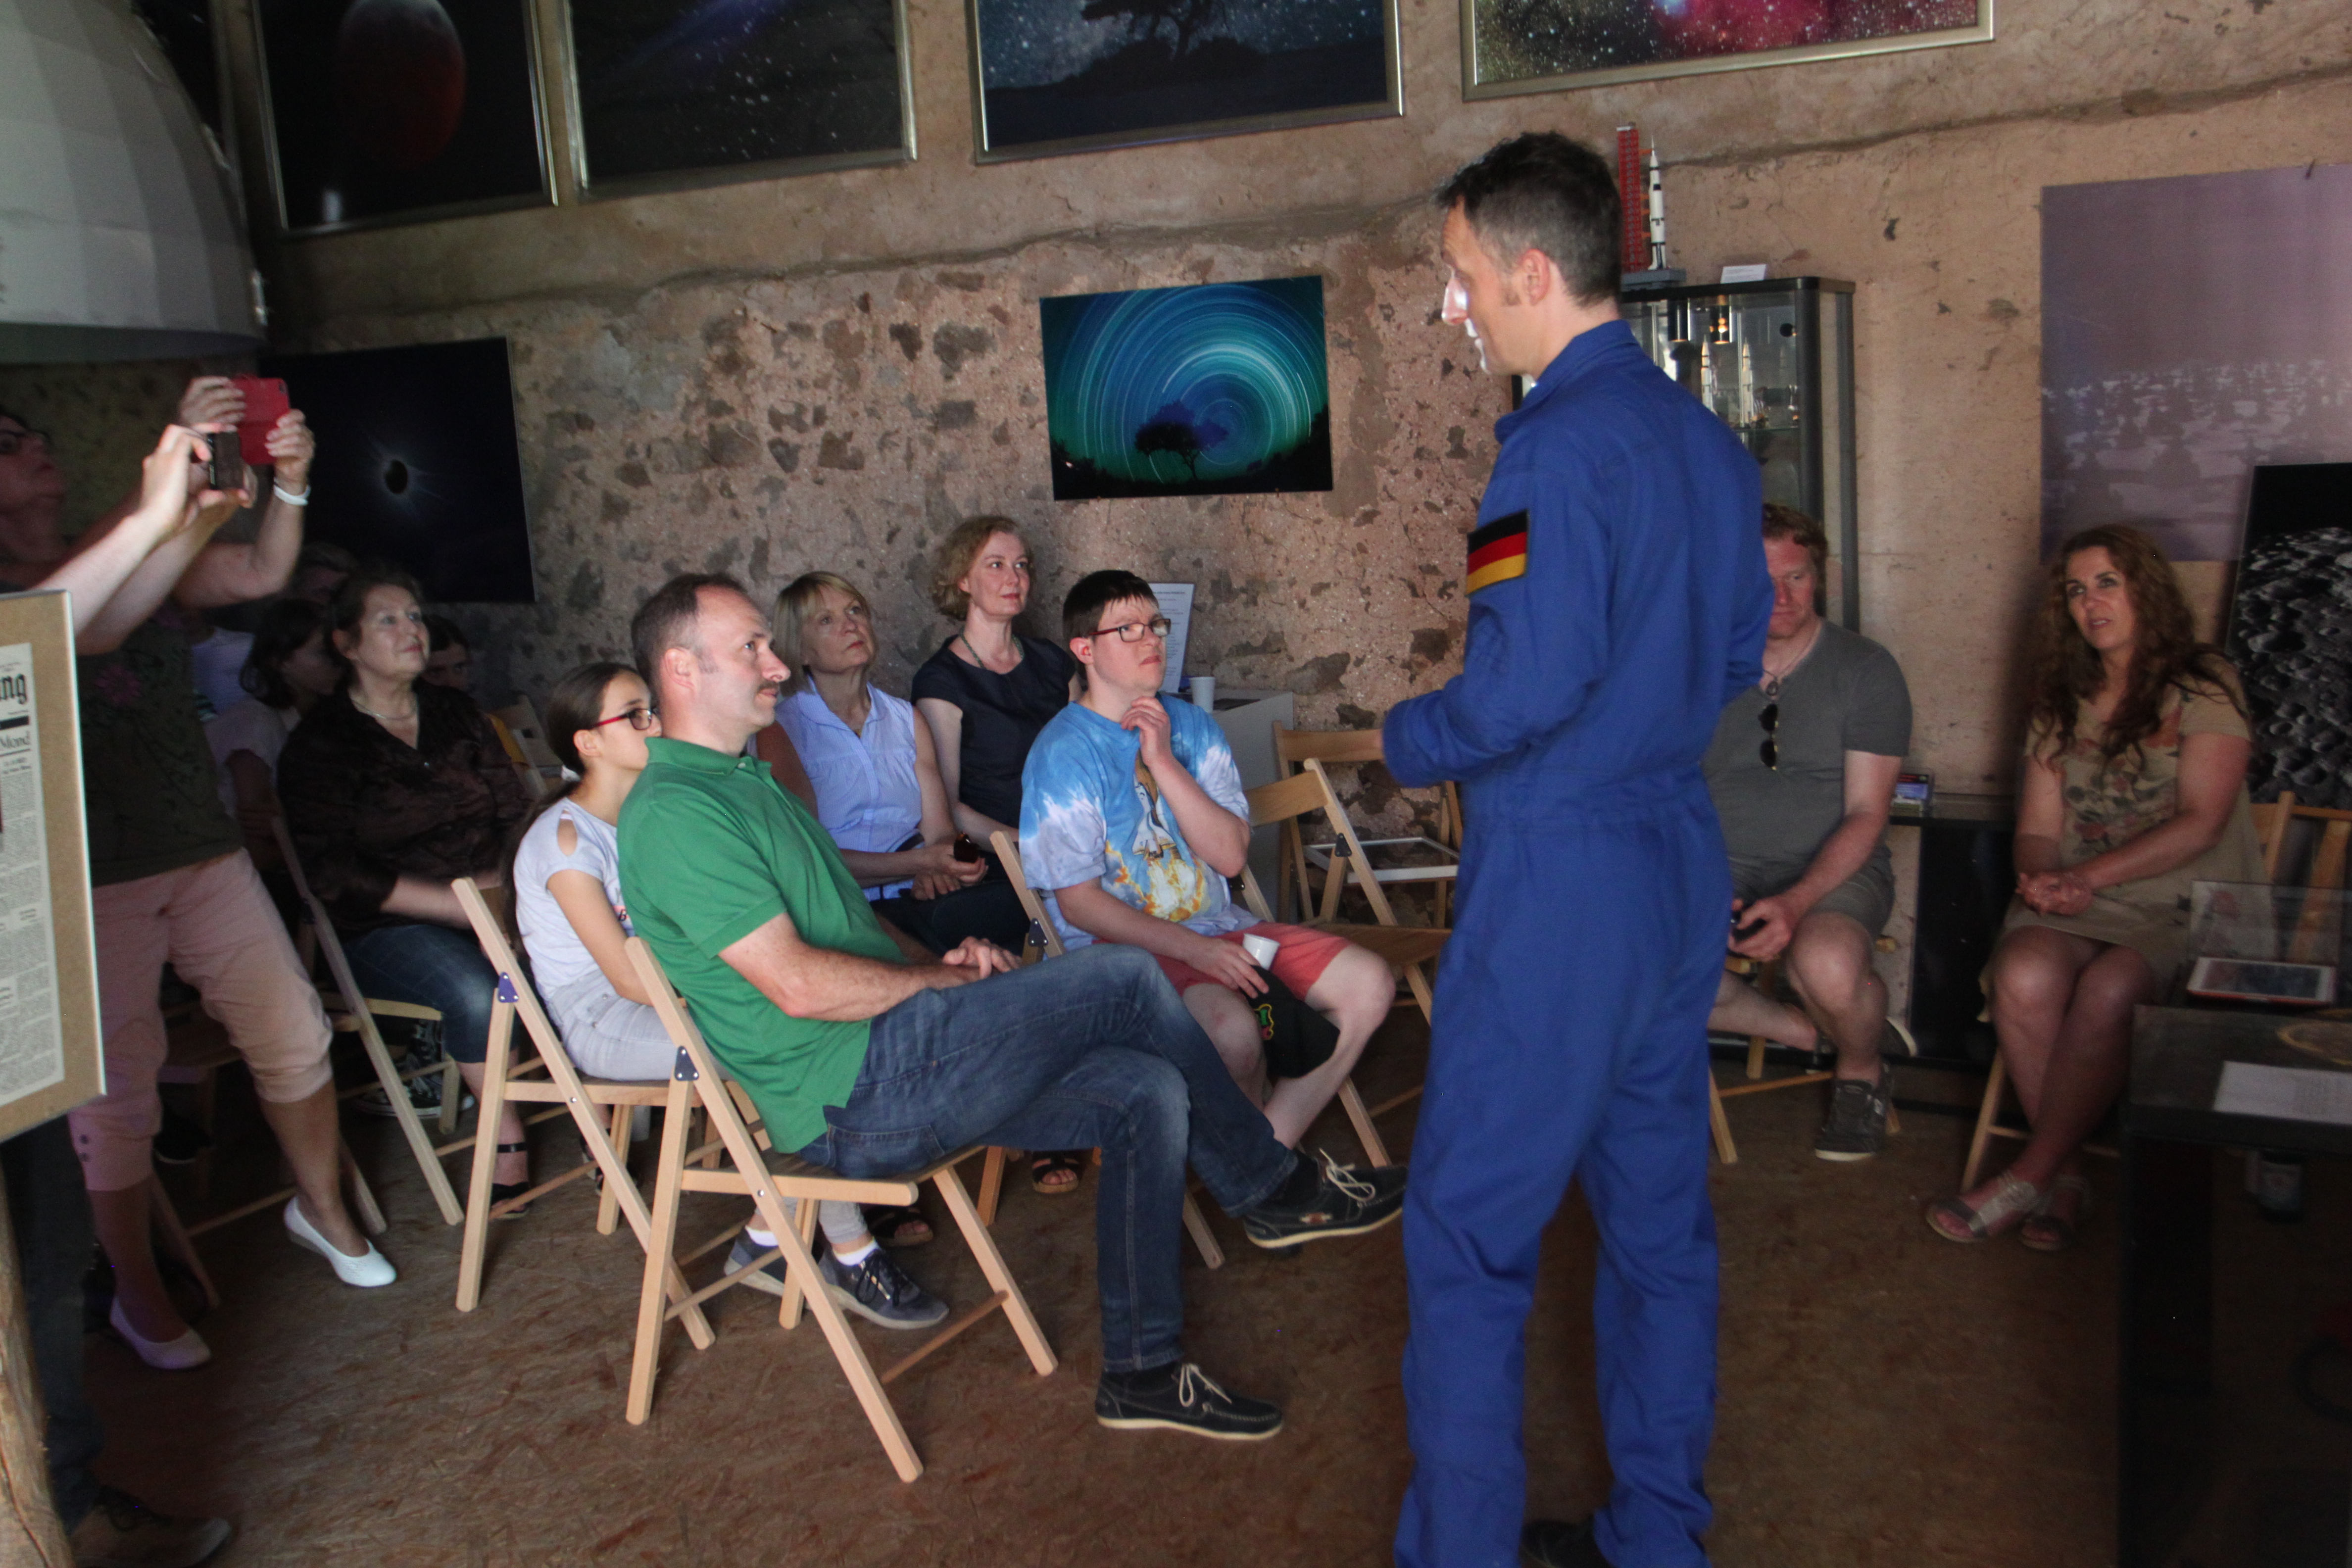 Der ESA Astronaut Matthias Maurer zu Besuch im Weltraum-Atelier Nohfelden